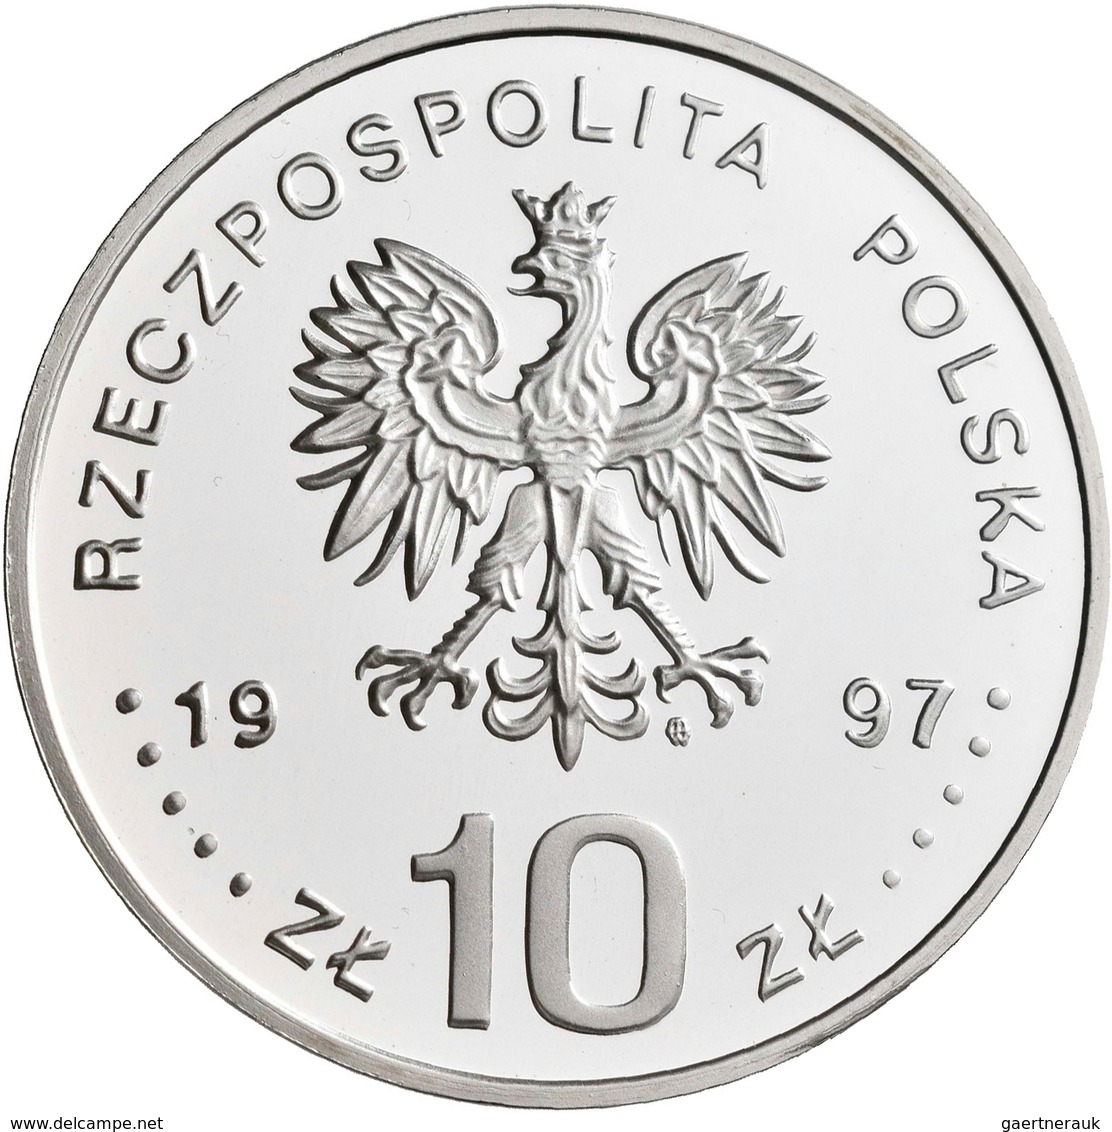 Polen: 10 Zlotych 1997, Stefan Batory, KM# Y 327, Fischer K (10) 011. Polierte Platte. - Pologne